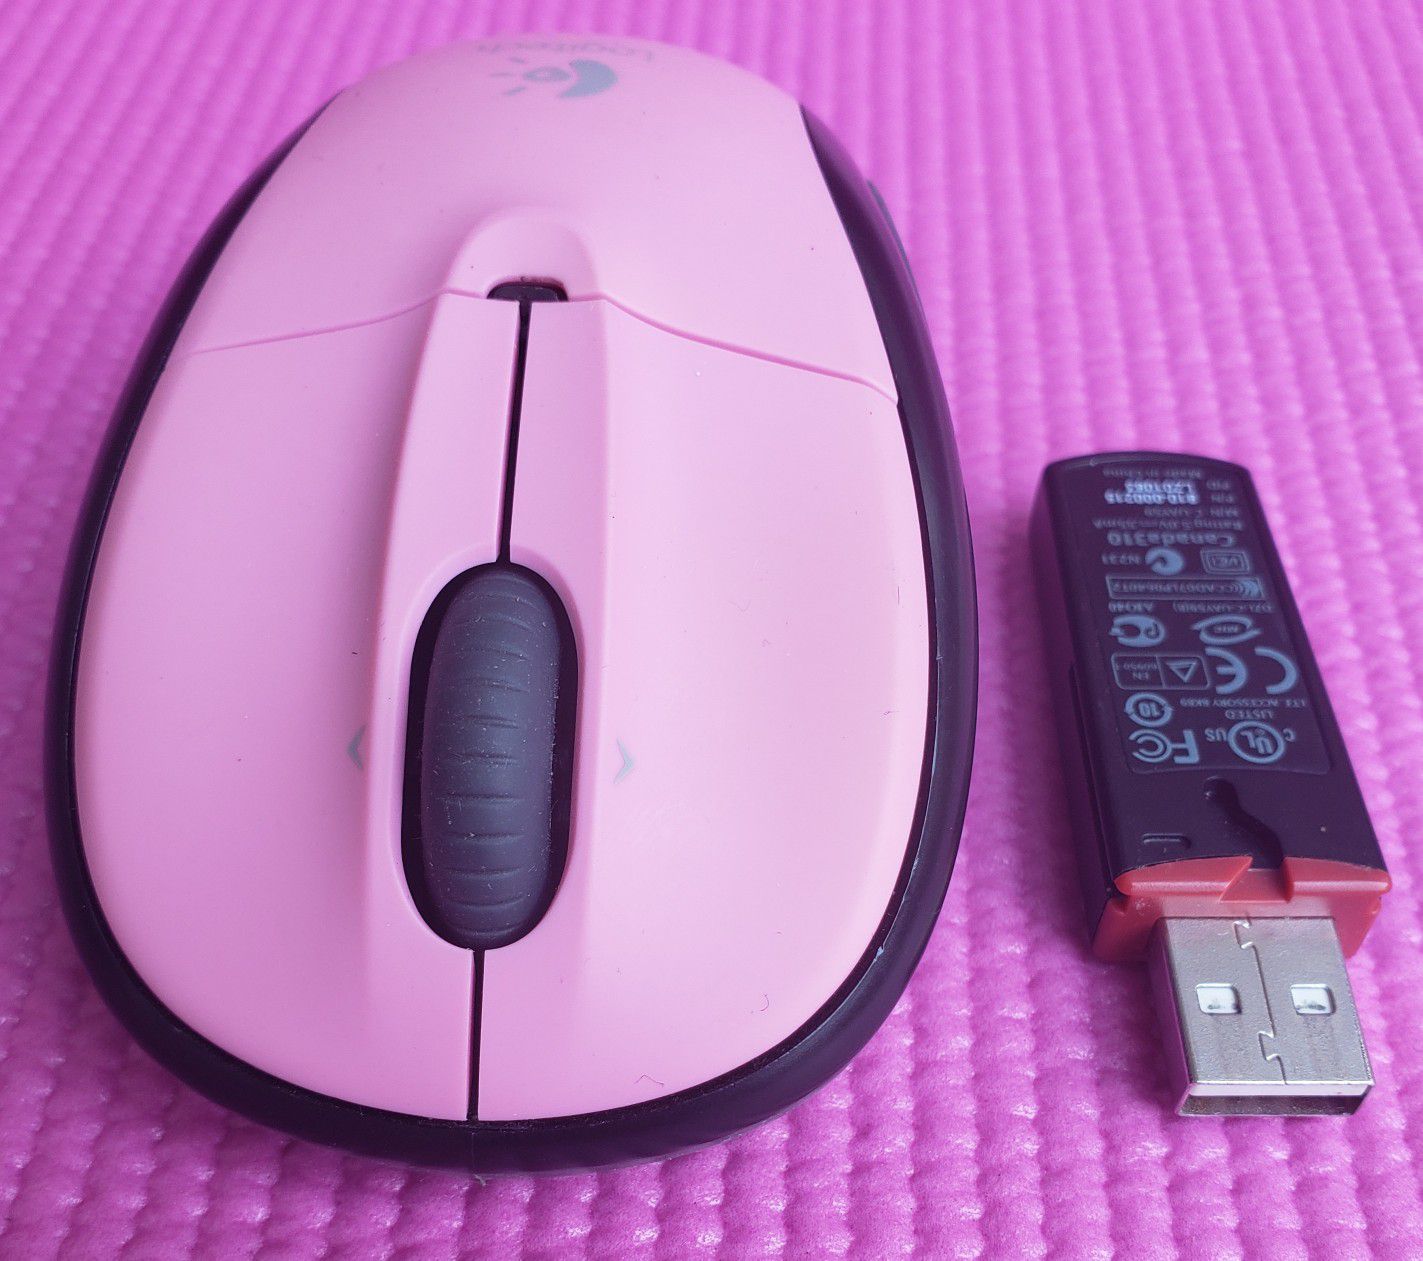 Logitech V220 3-Button Wireless Mouse